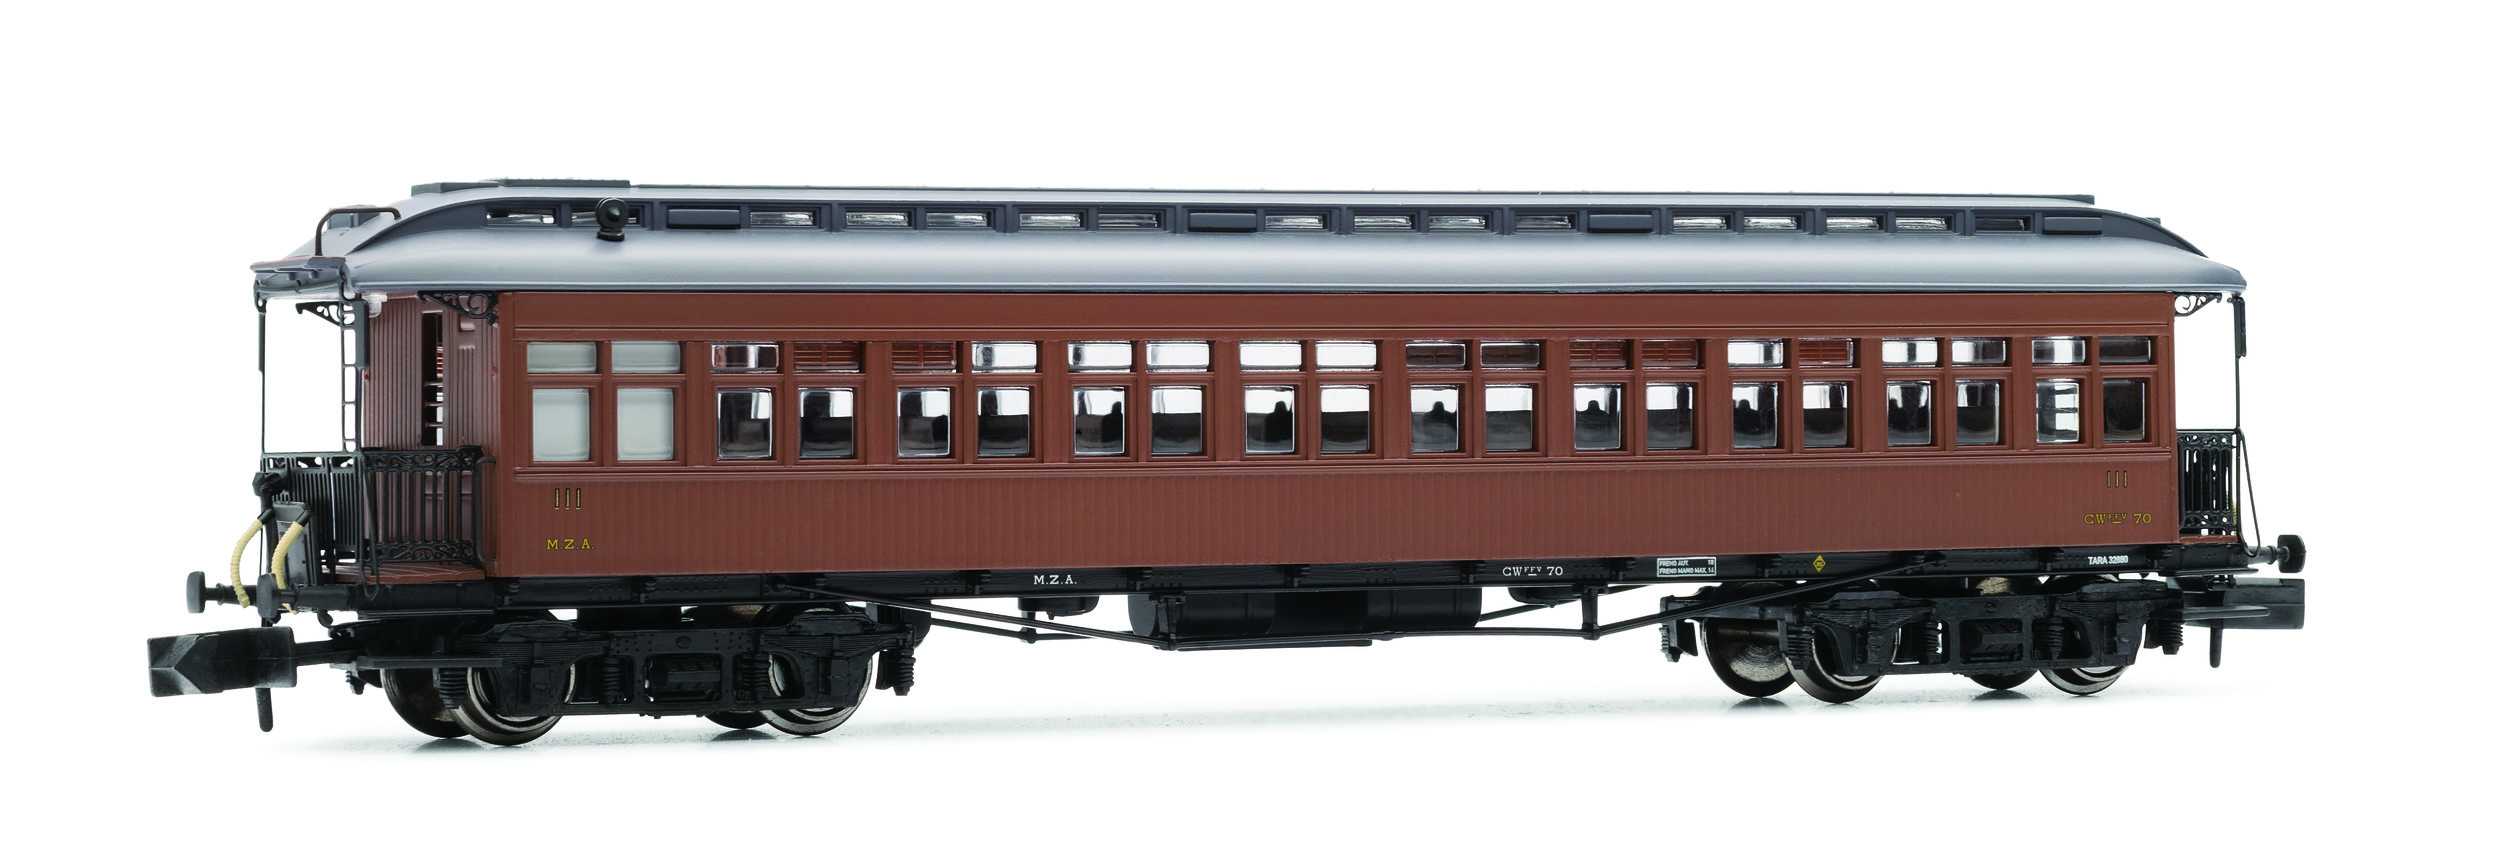 Trains miniatures : locomotives et autorail - Passager COSTA, 3e class